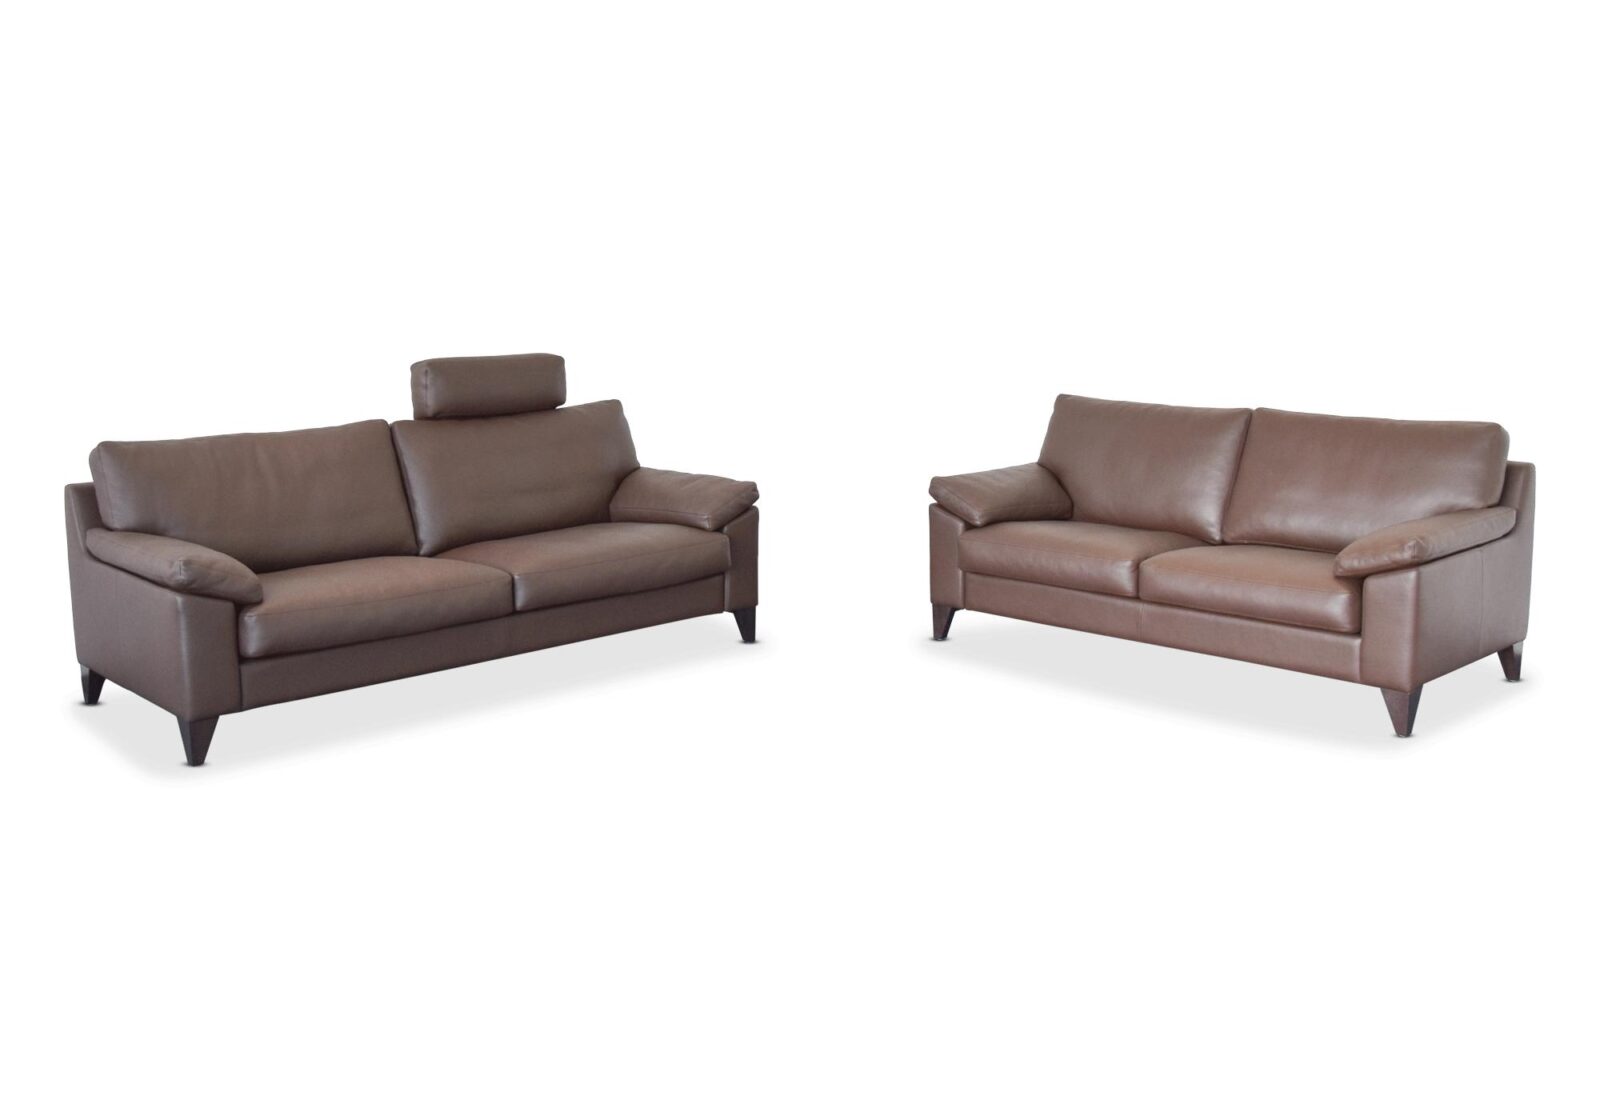 Polstergruppe Ronco  2er und 2.5er Sofa. Bezug: Leder. Farbe: Braun. Erhältlich bei Möbel Gallati.